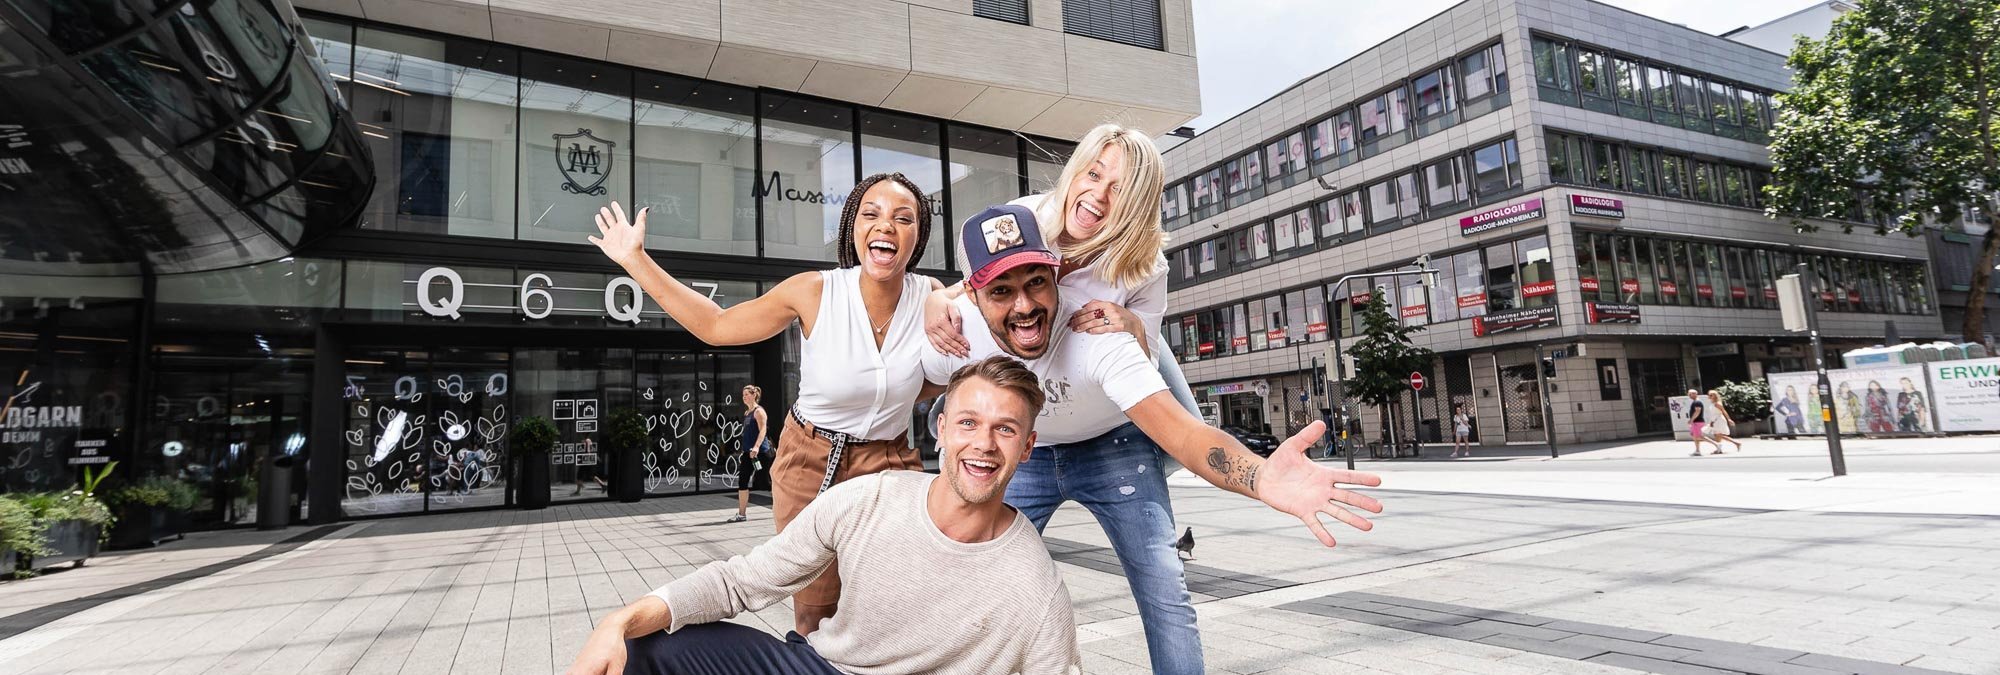 Dieses Bild zeigt vier Personen, die fröhlich auf dem Münzplatz zusammen lächeln. 